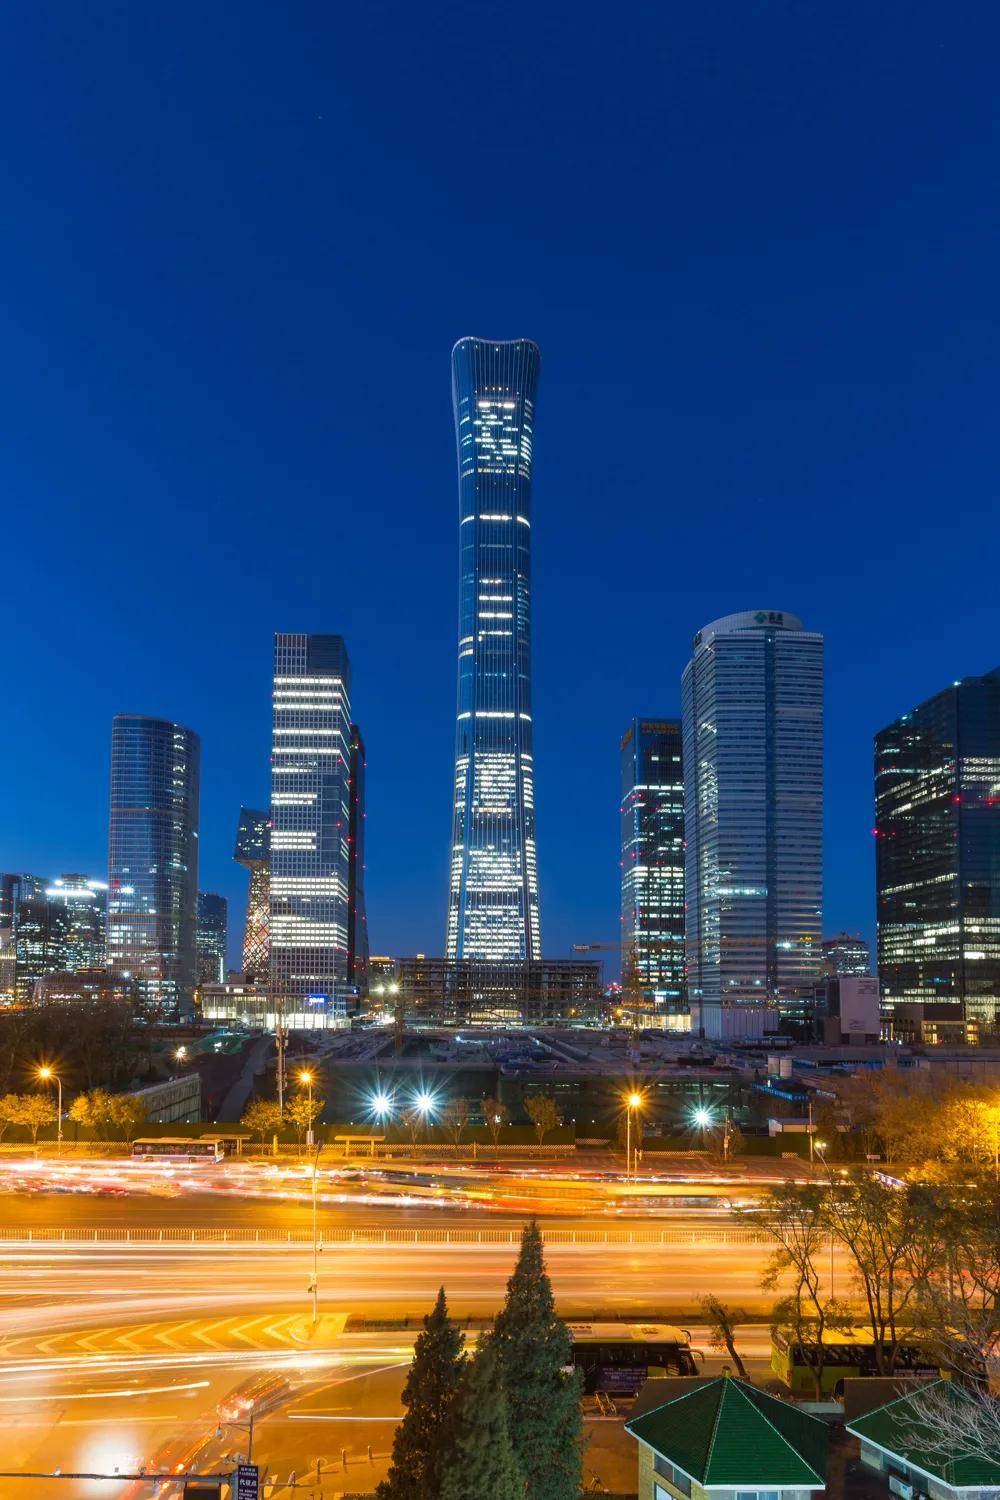 入住酒店房间,推开窗就能看到北京第一高楼"中国尊,以尊为建筑